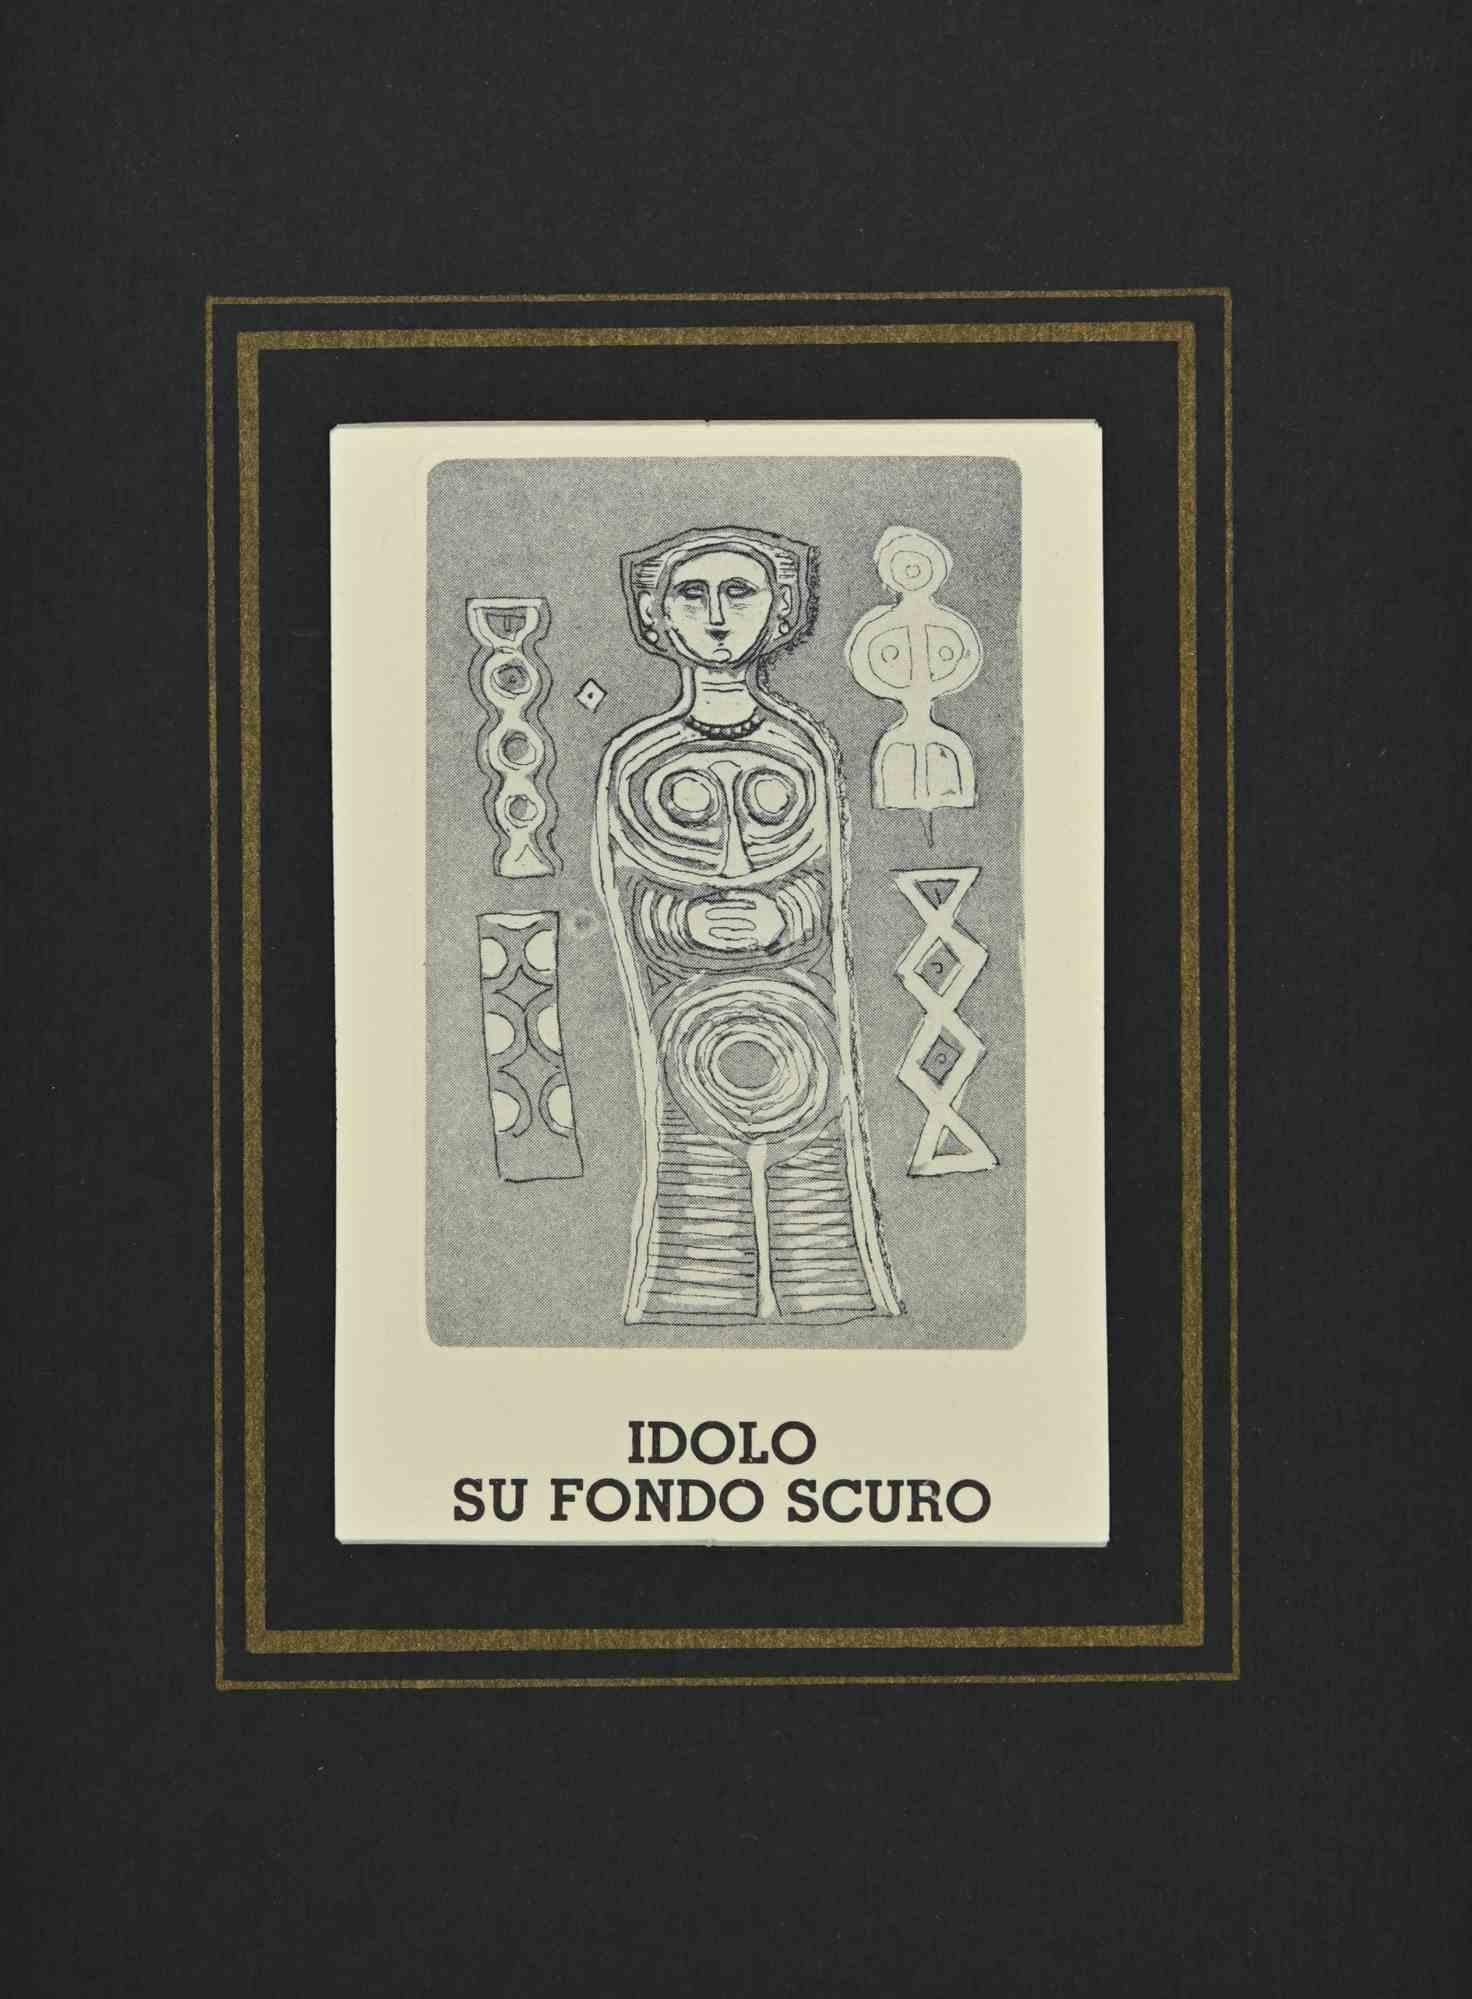 Idol on Dark Background est une estampe réalisée par Massimo Campigli dans les années 1970/1971.

Gravure sur papier.

Cette œuvre fait partie d'une série de travaux créés dans la dernière période de l'artiste et imprimés au tournant de l'année de